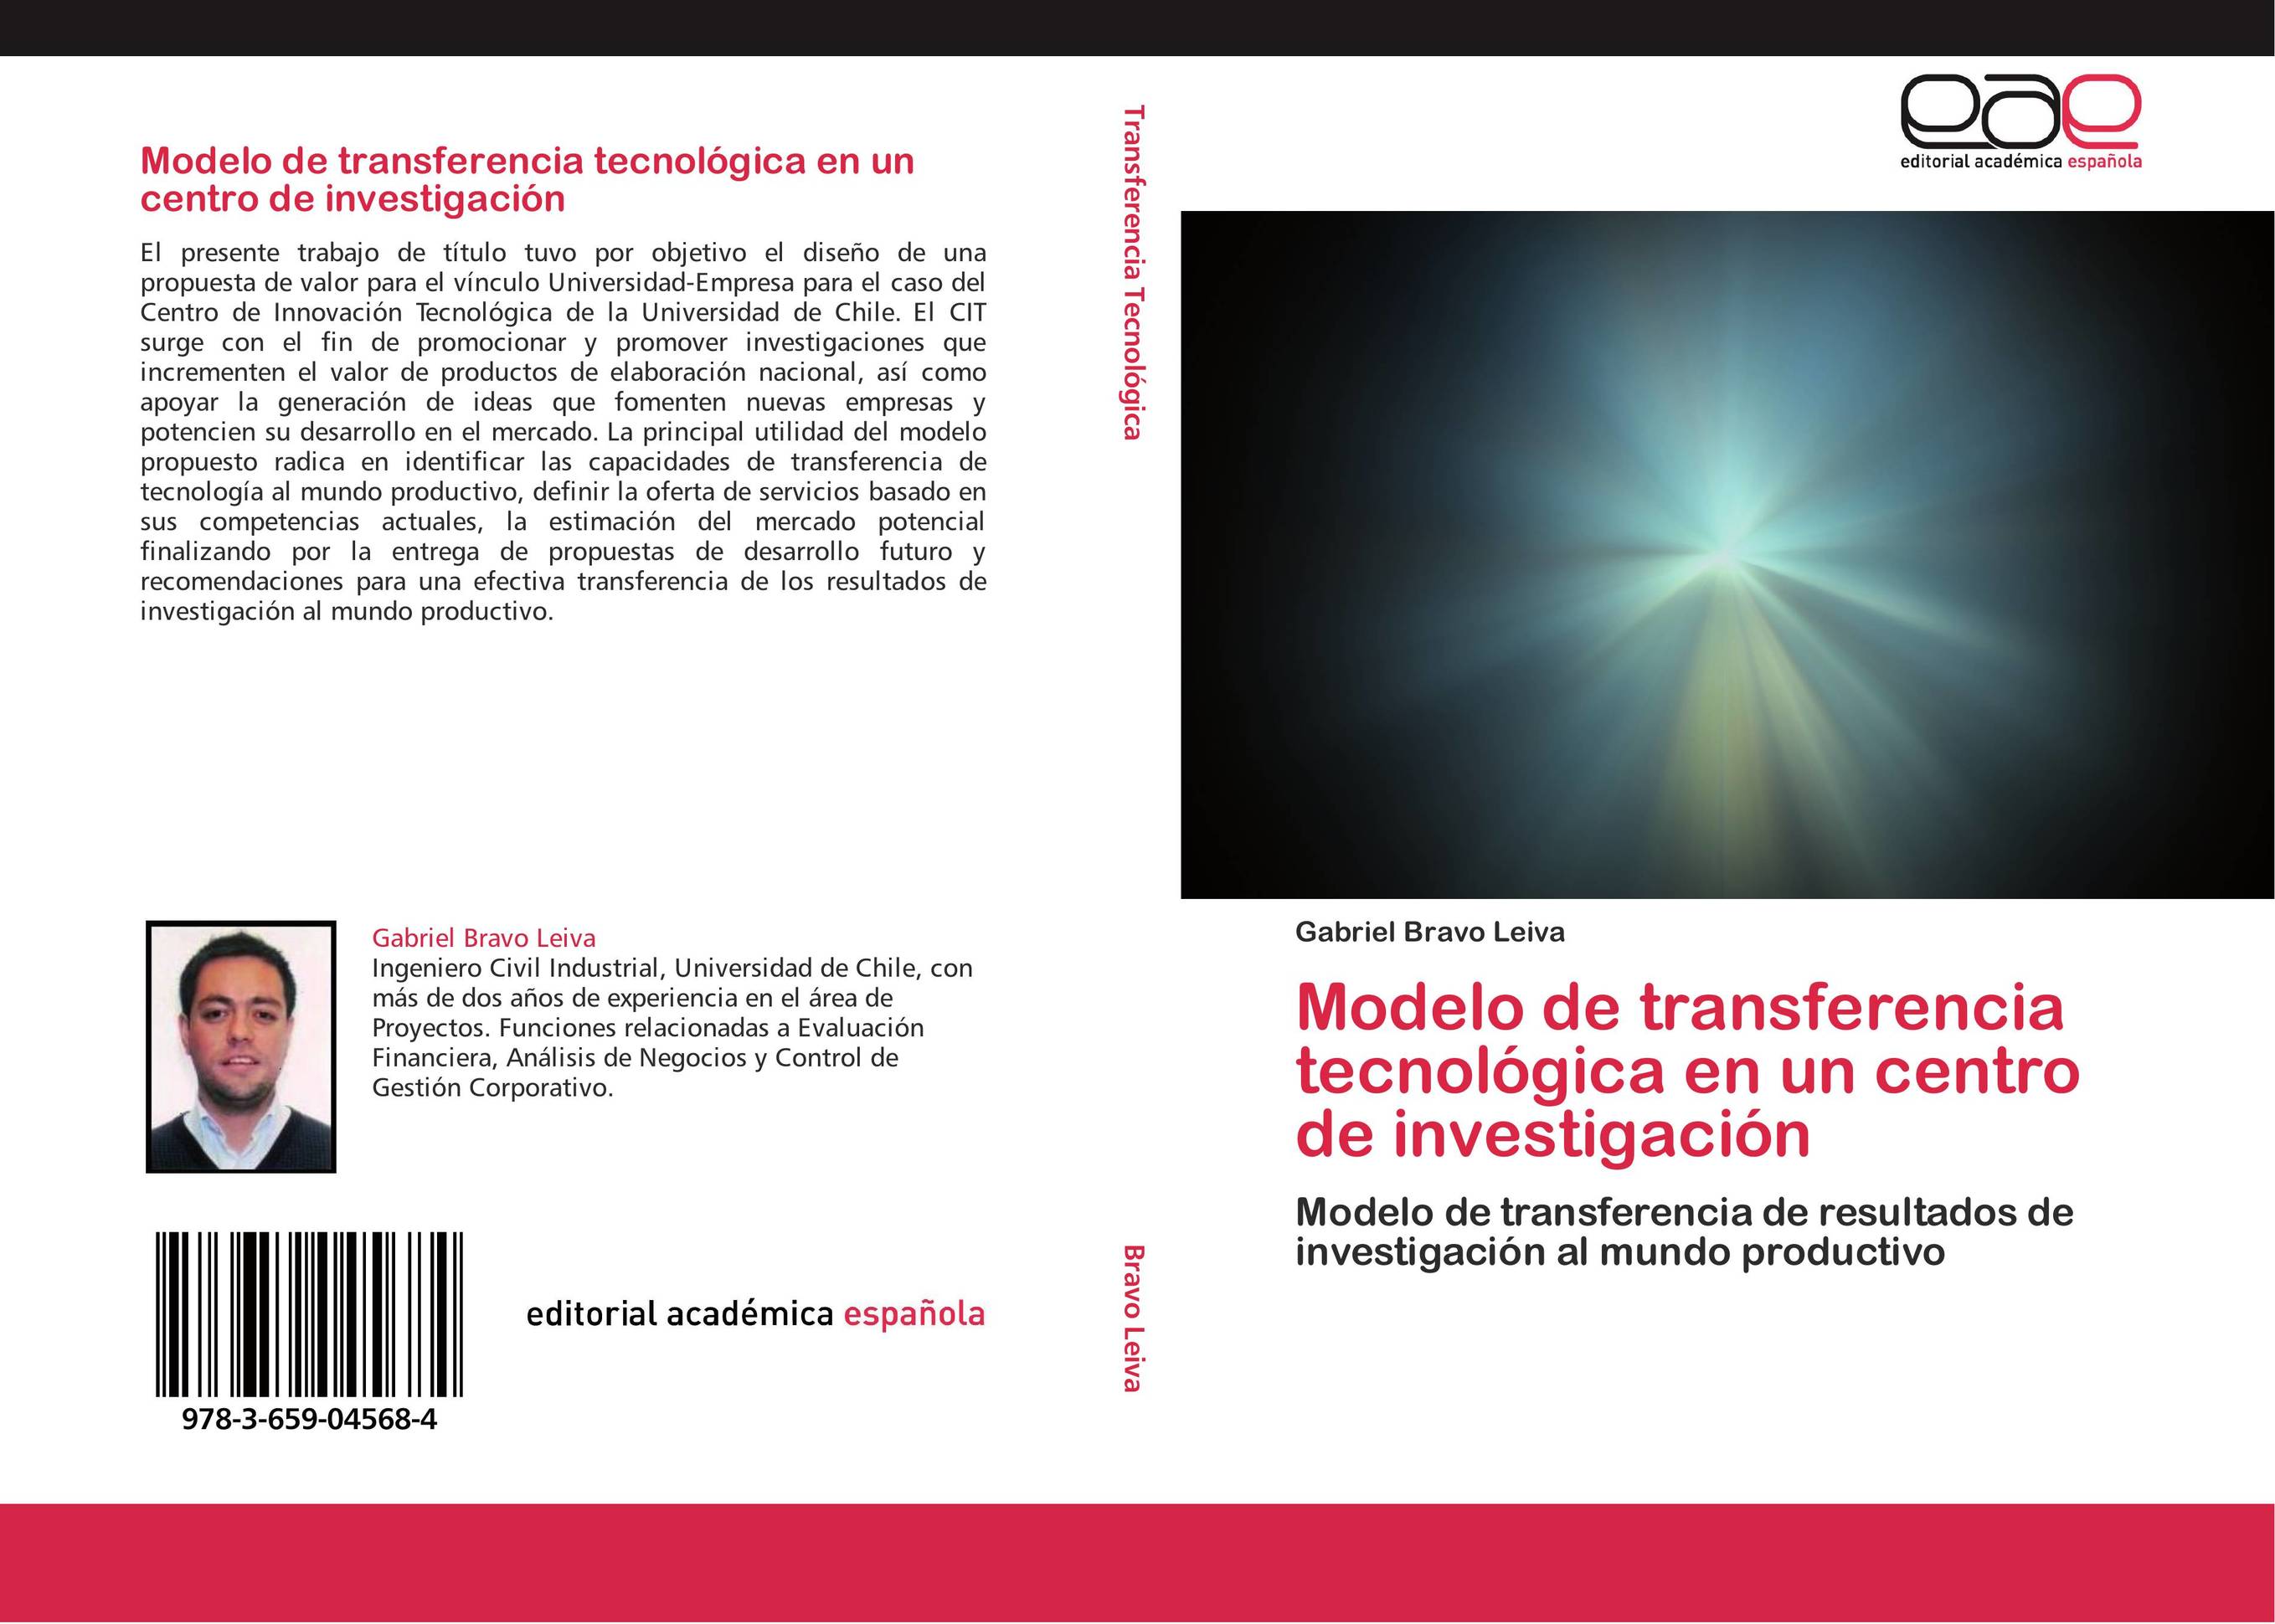 Modelo de transferencia tecnológica en un centro de investigación